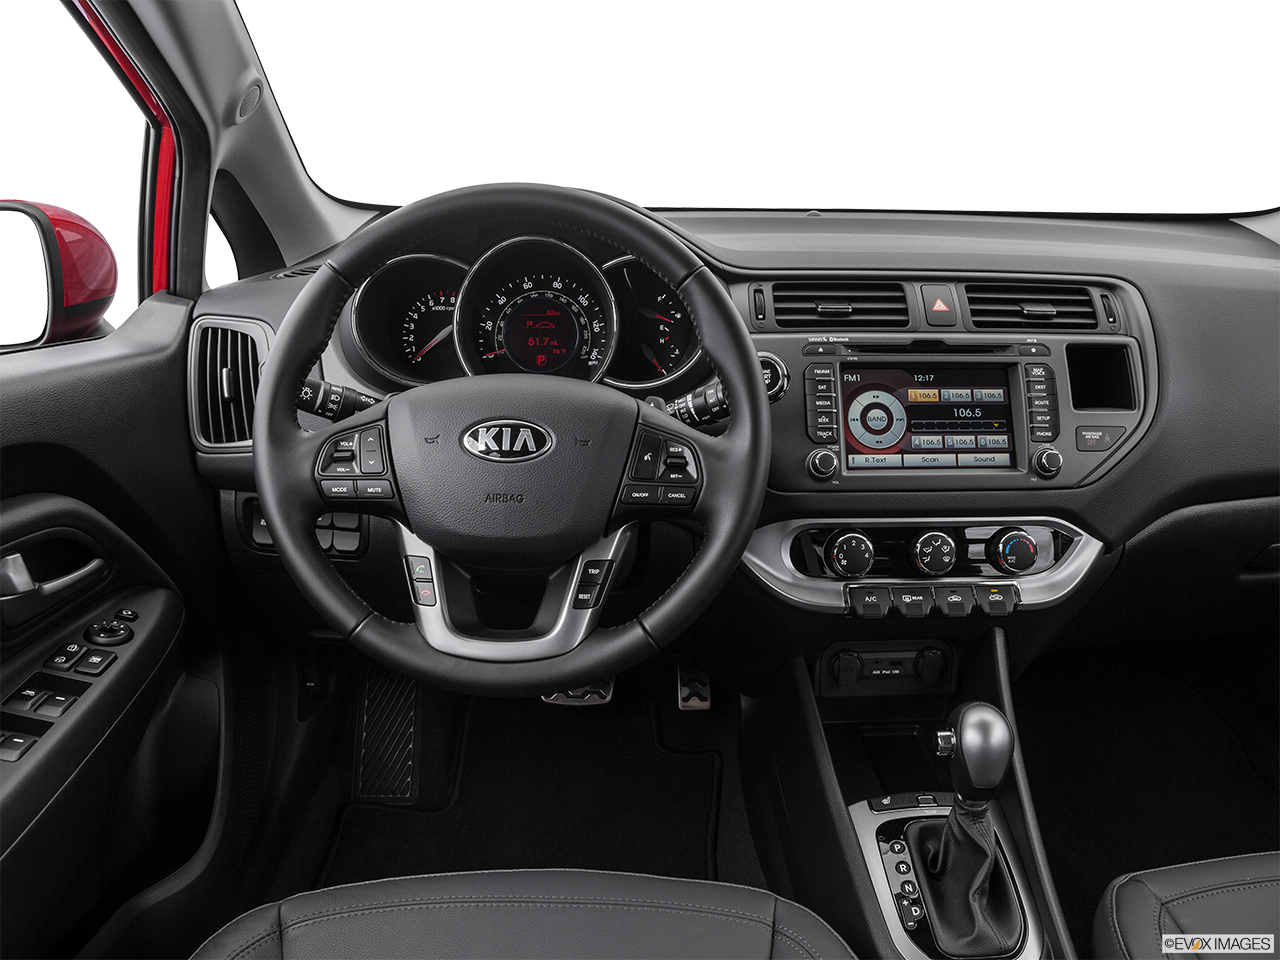 2015 Kia Rio 5-door SX Steering wheel/Center Console. 